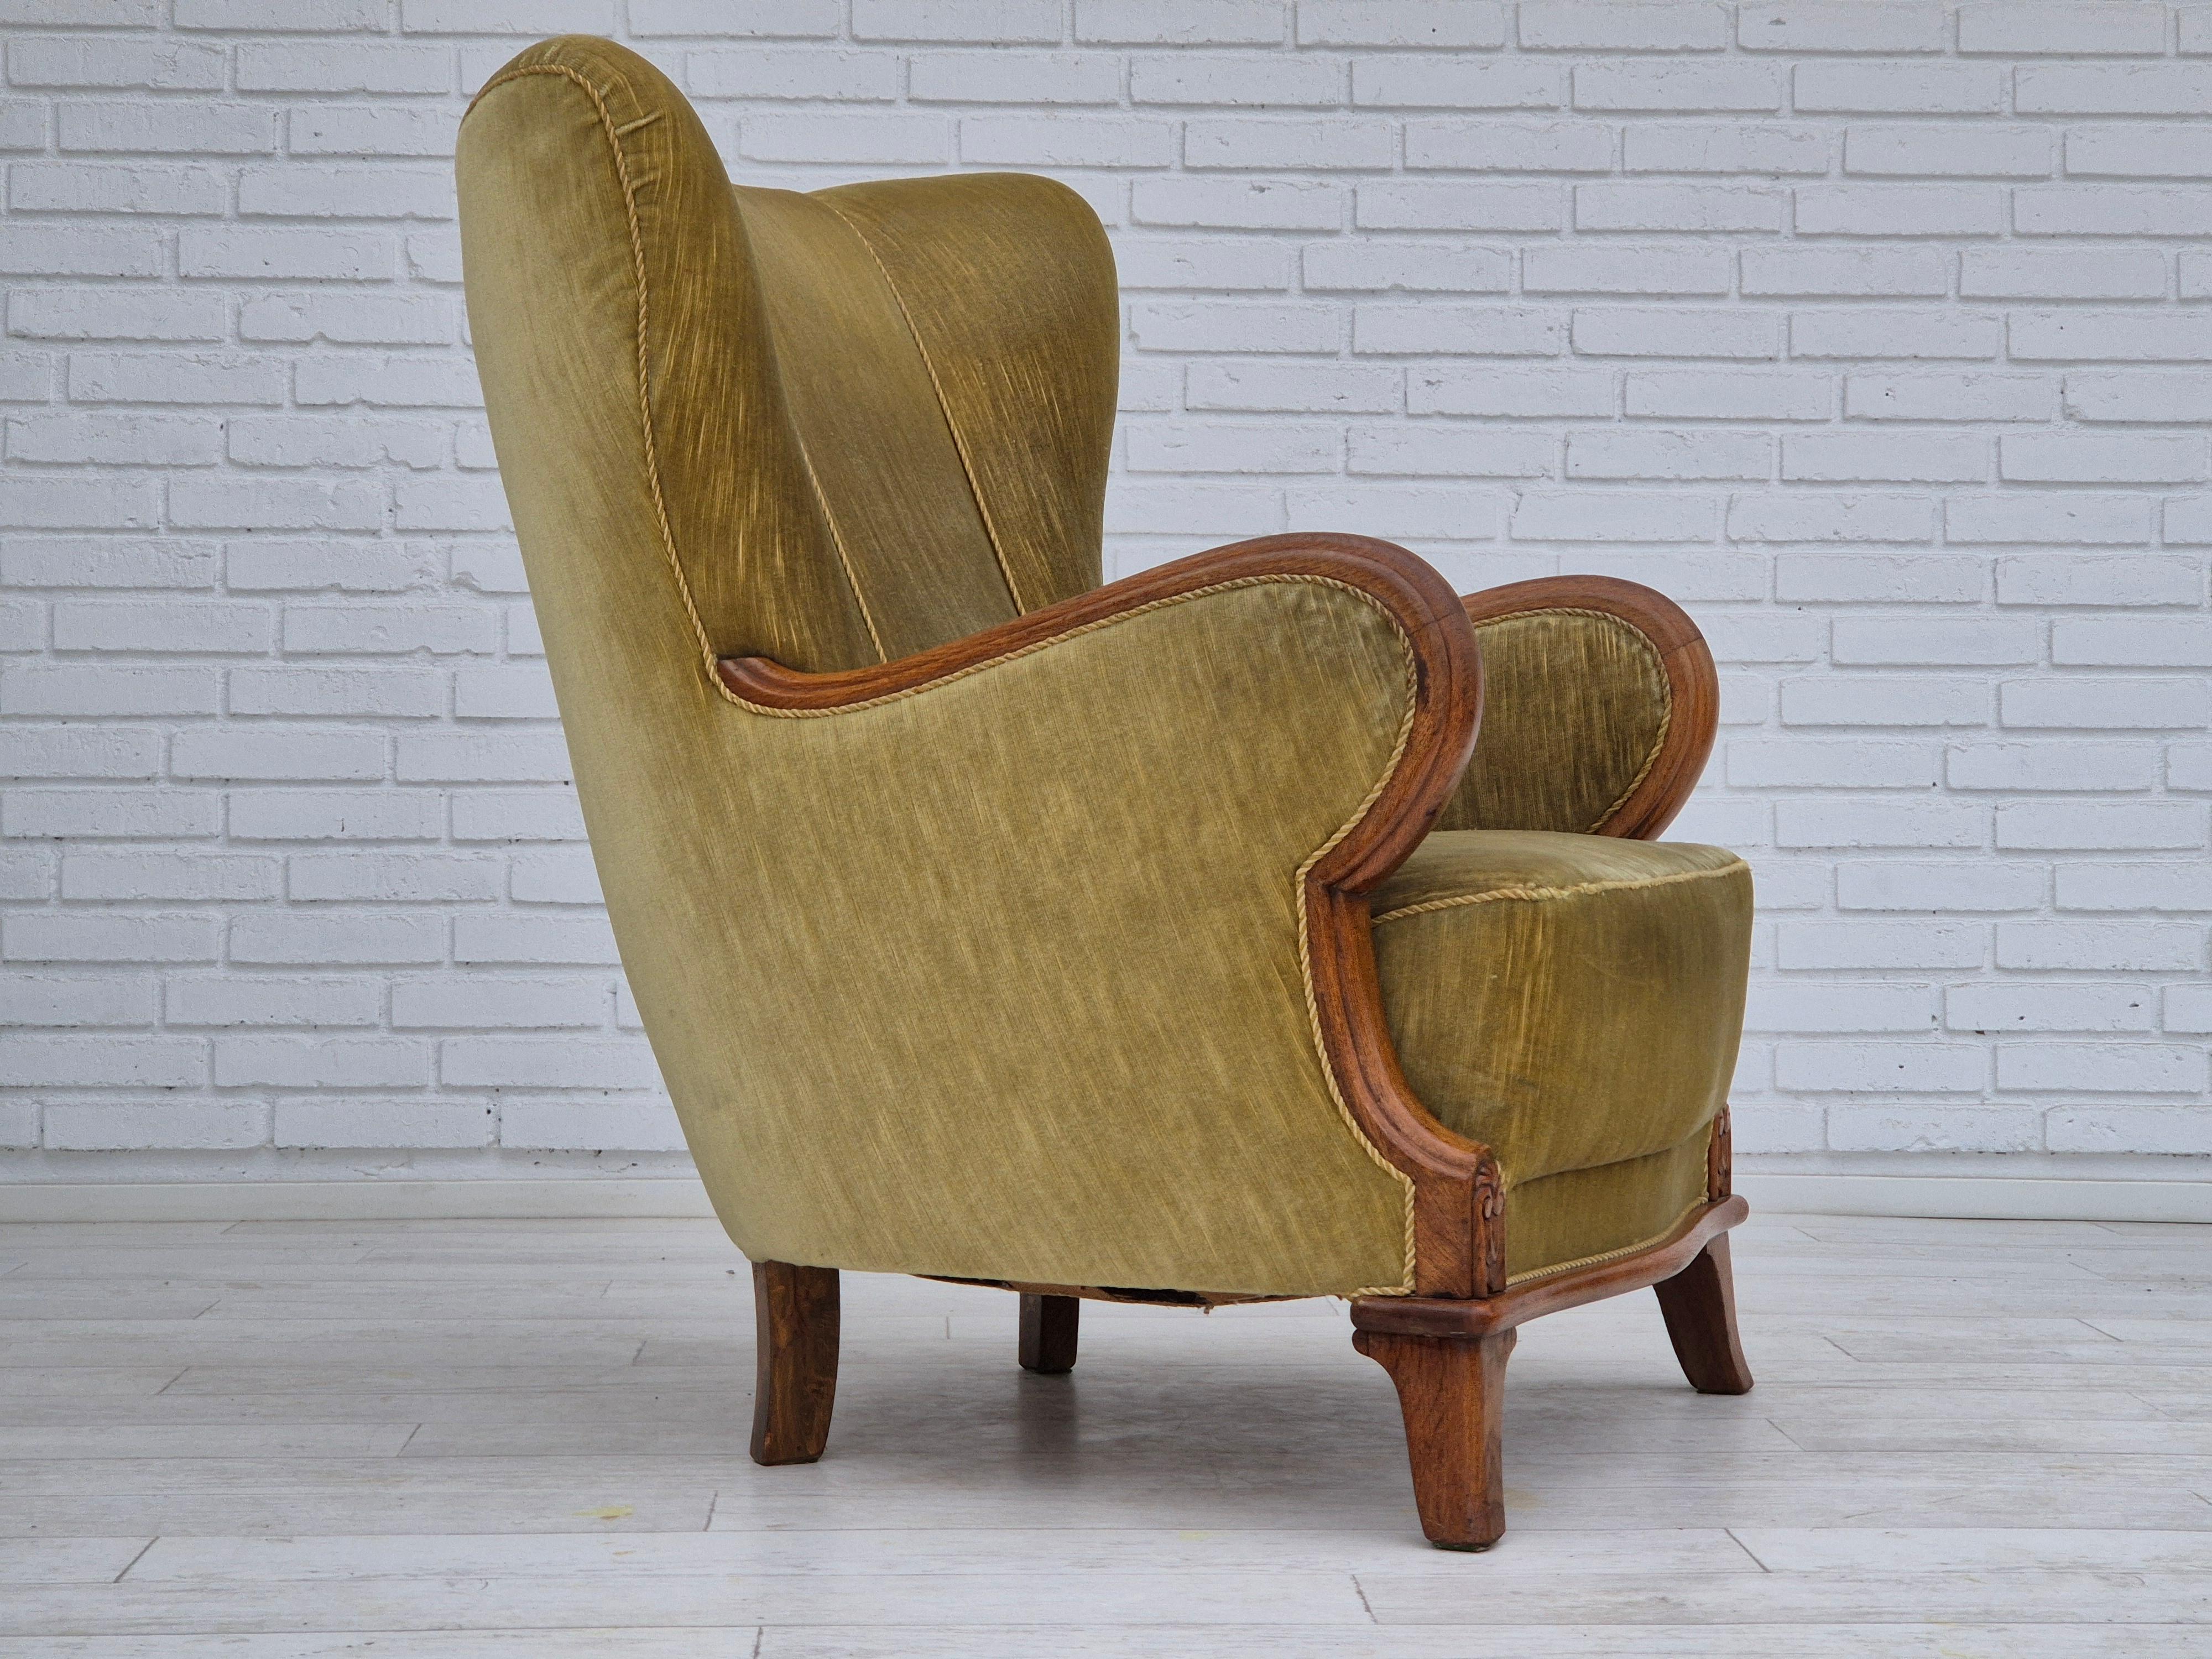 1960er Jahre, dänischer Sessel in sehr gutem Originalzustand: keine Gerüche und keine Flecken. Hellgrüner Möbelvelours, Eichenholz. Messingfedern im Sitz. Hergestellt von einem dänischen Möbelhersteller in den Jahren um 1960.